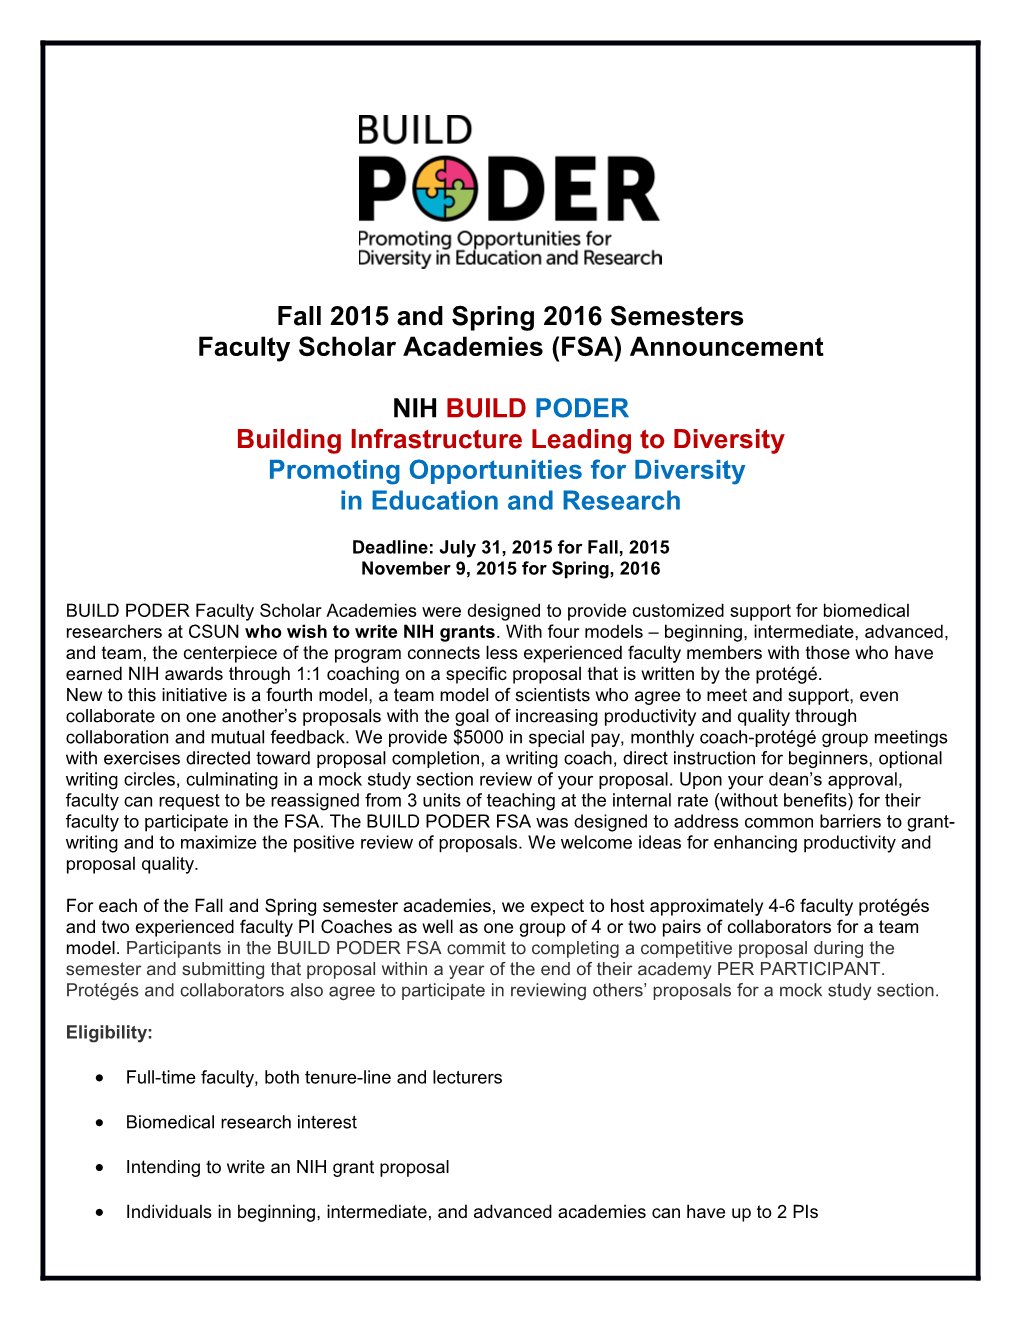 Faculty Scholar Academies (FSA) Announcement